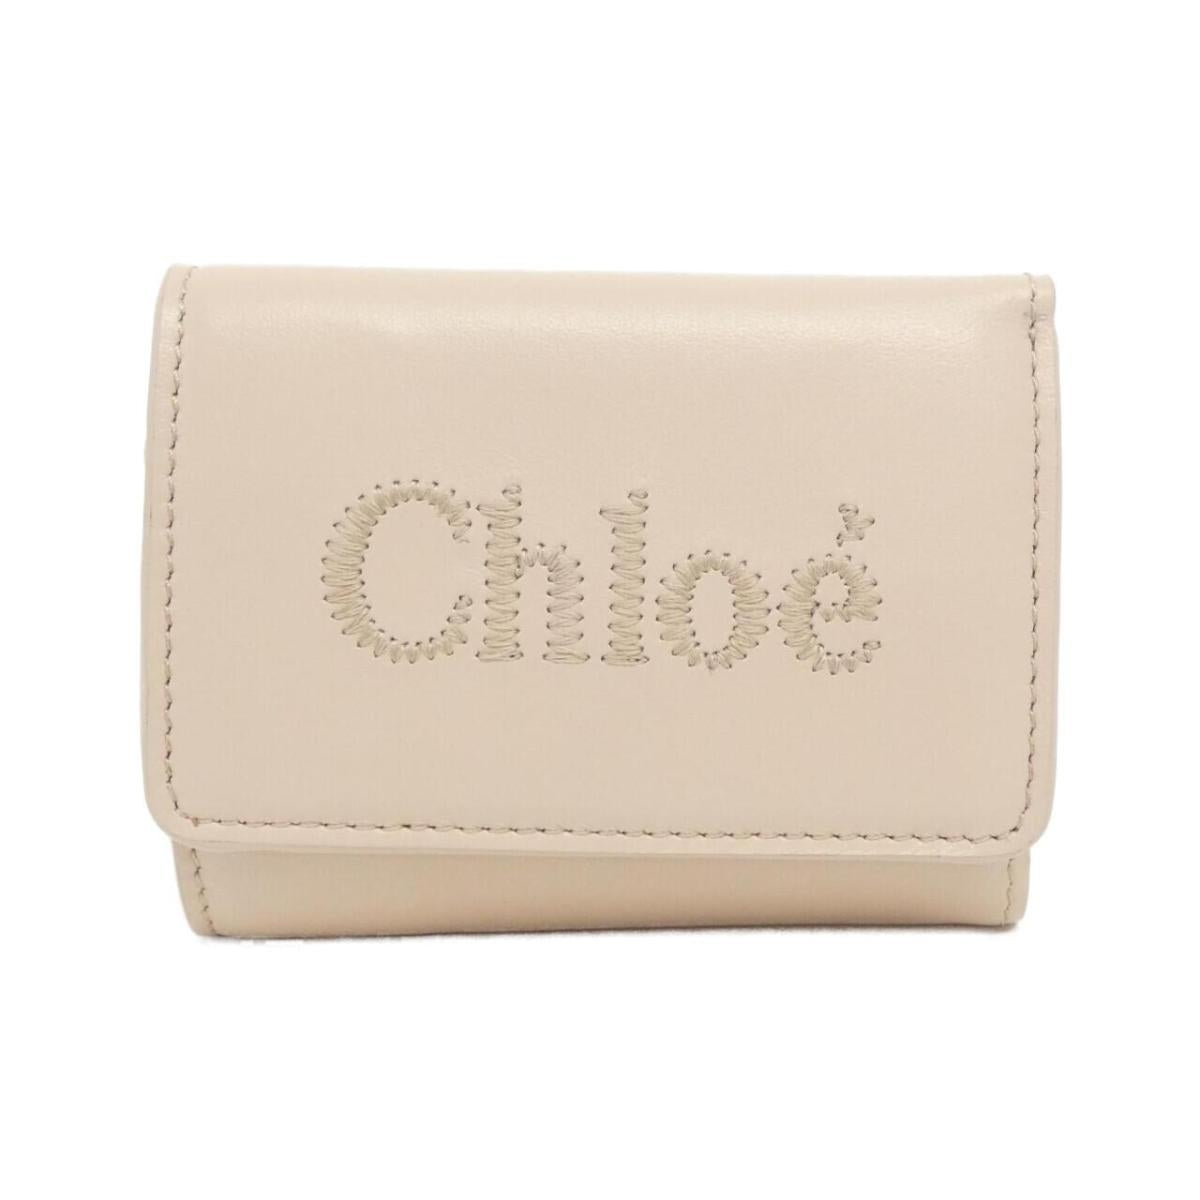 Chloe CHC23AP875 I10 Wallet